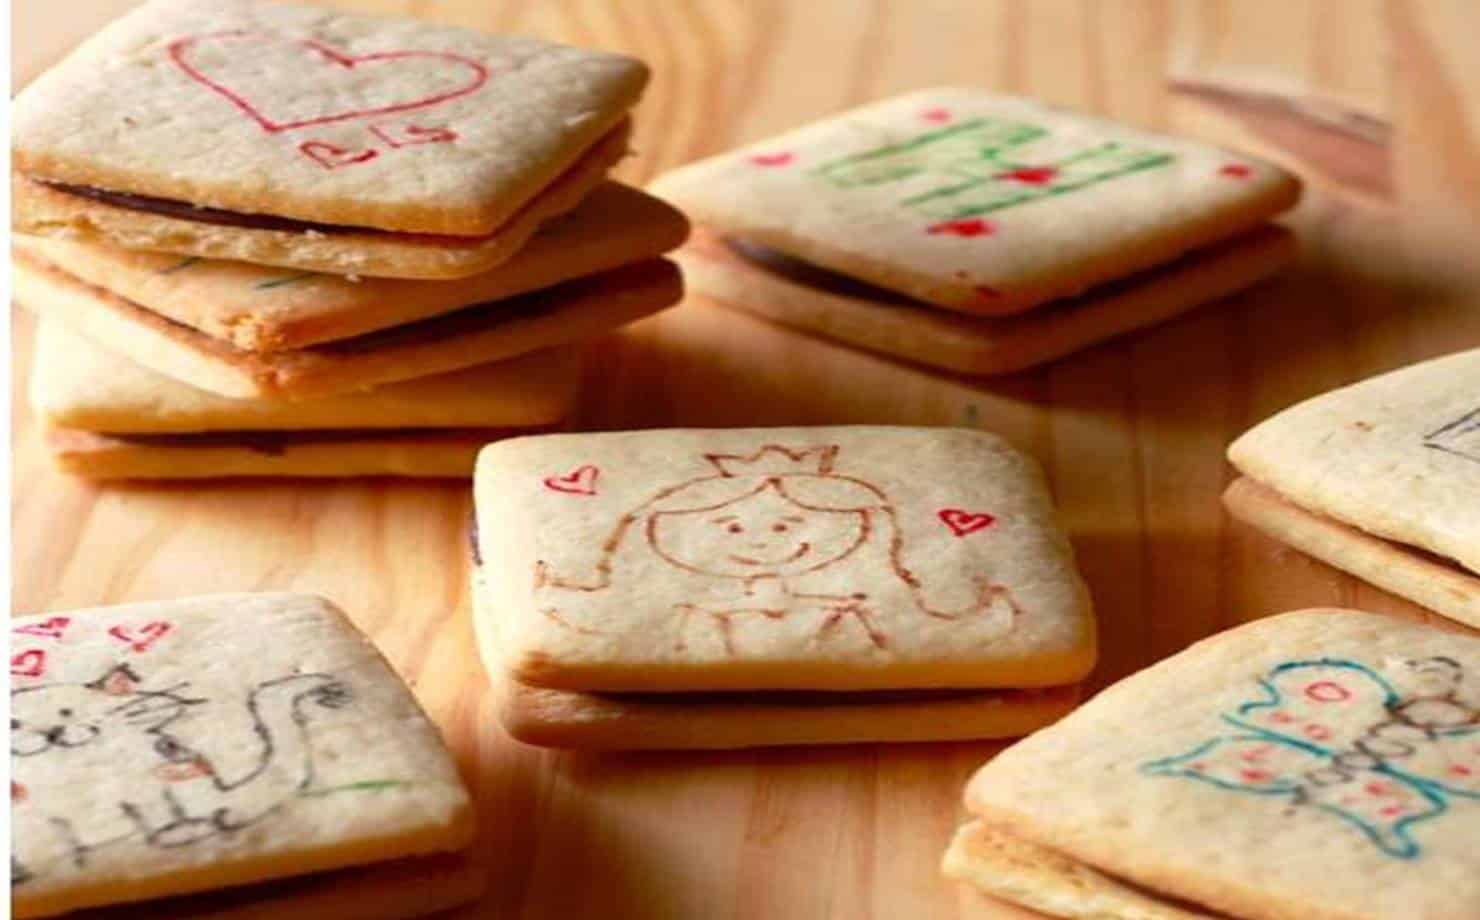 Aprenda a fazer deliciosos biscoitos passatempo caseiro